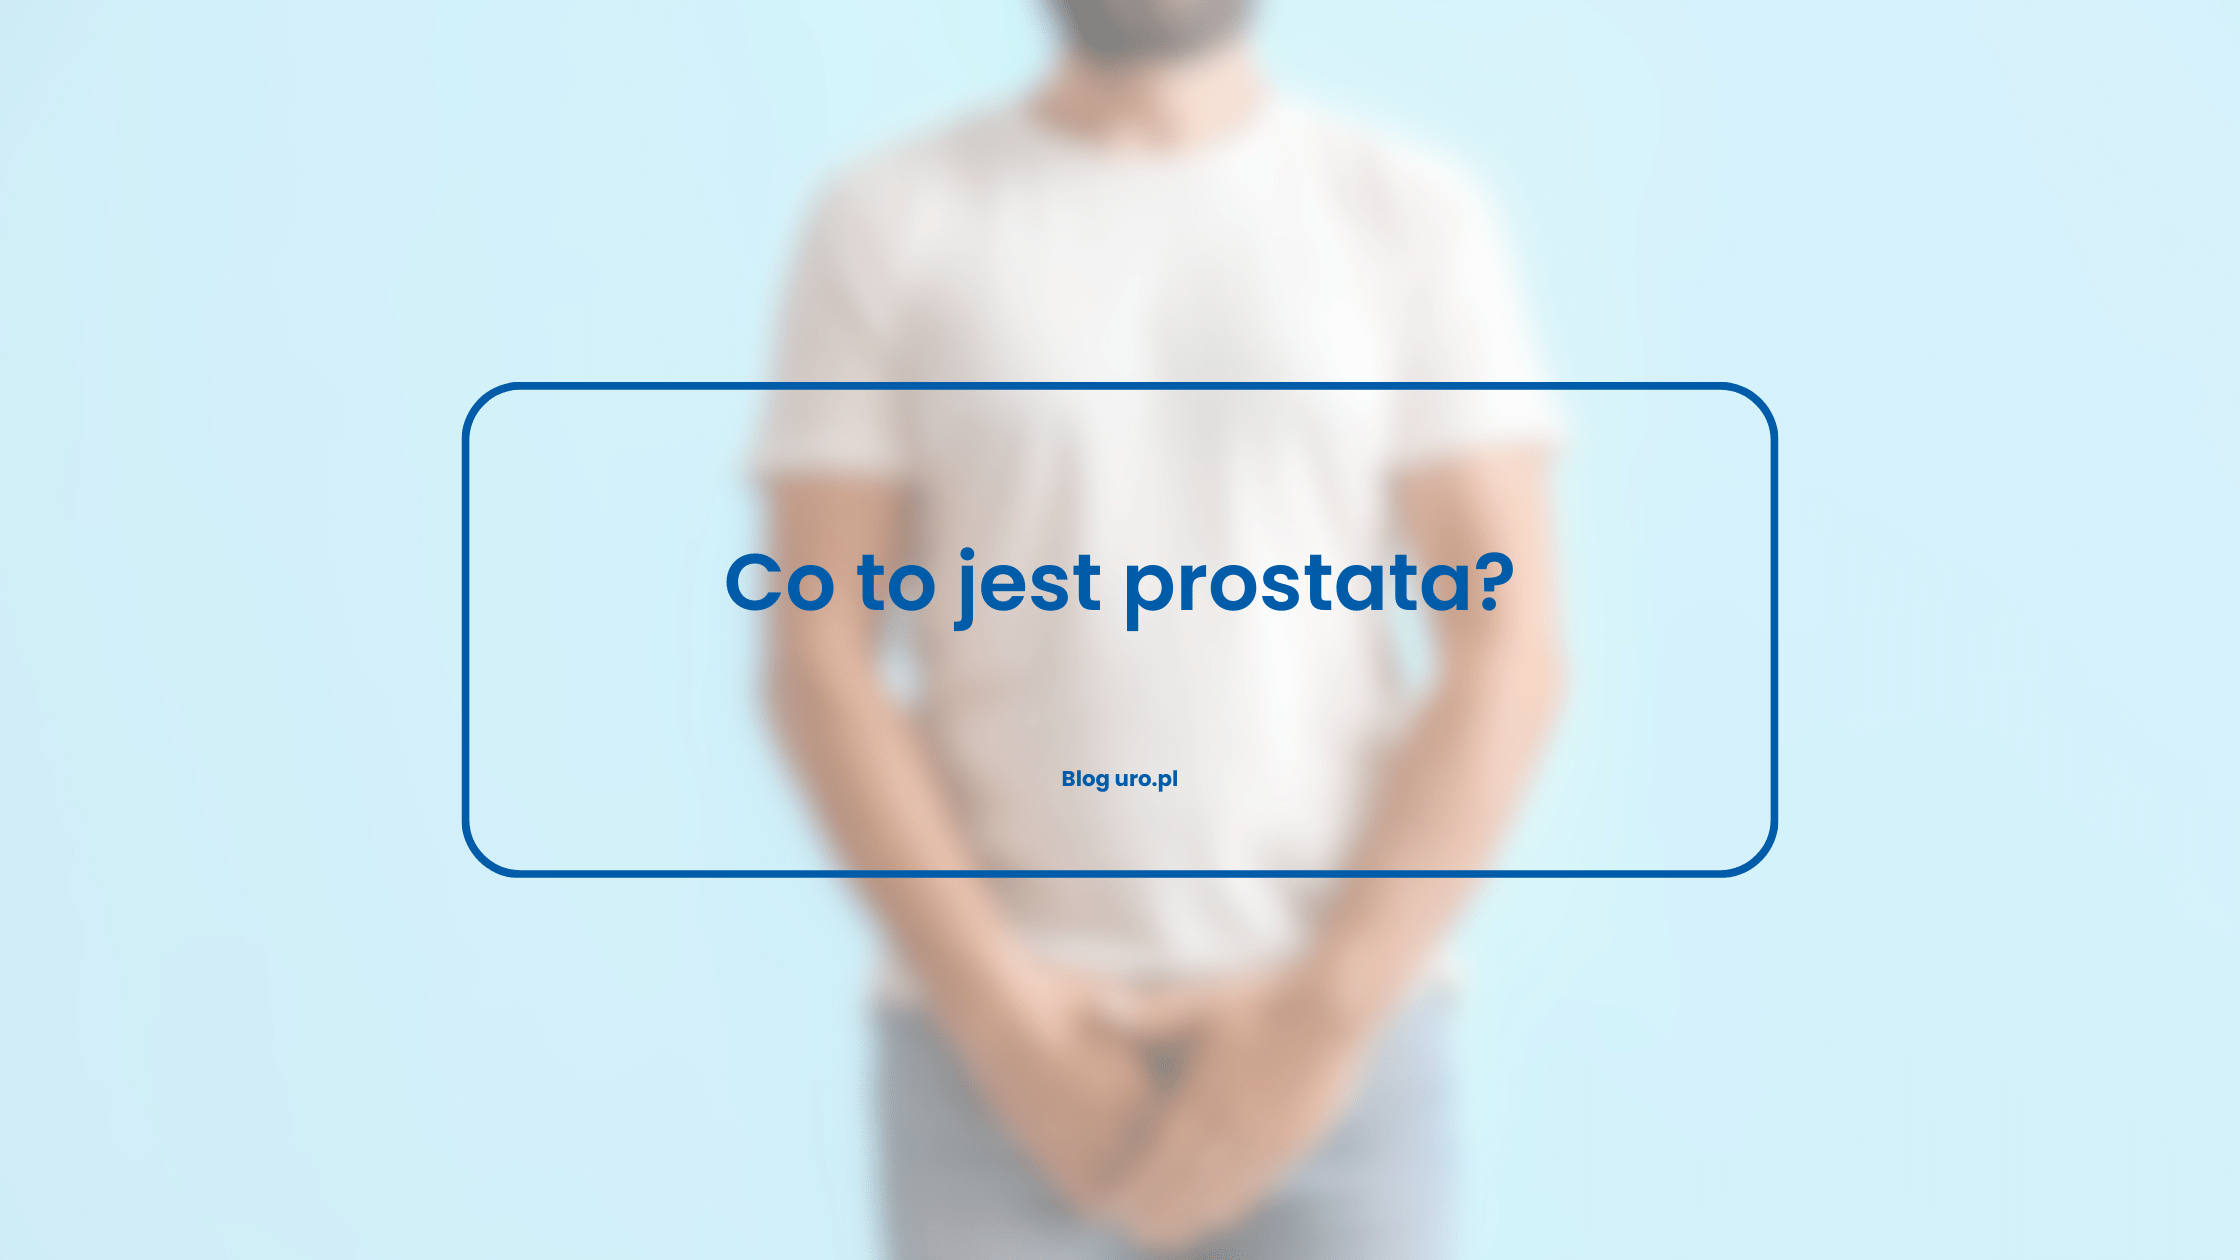 Co to jest prostata?